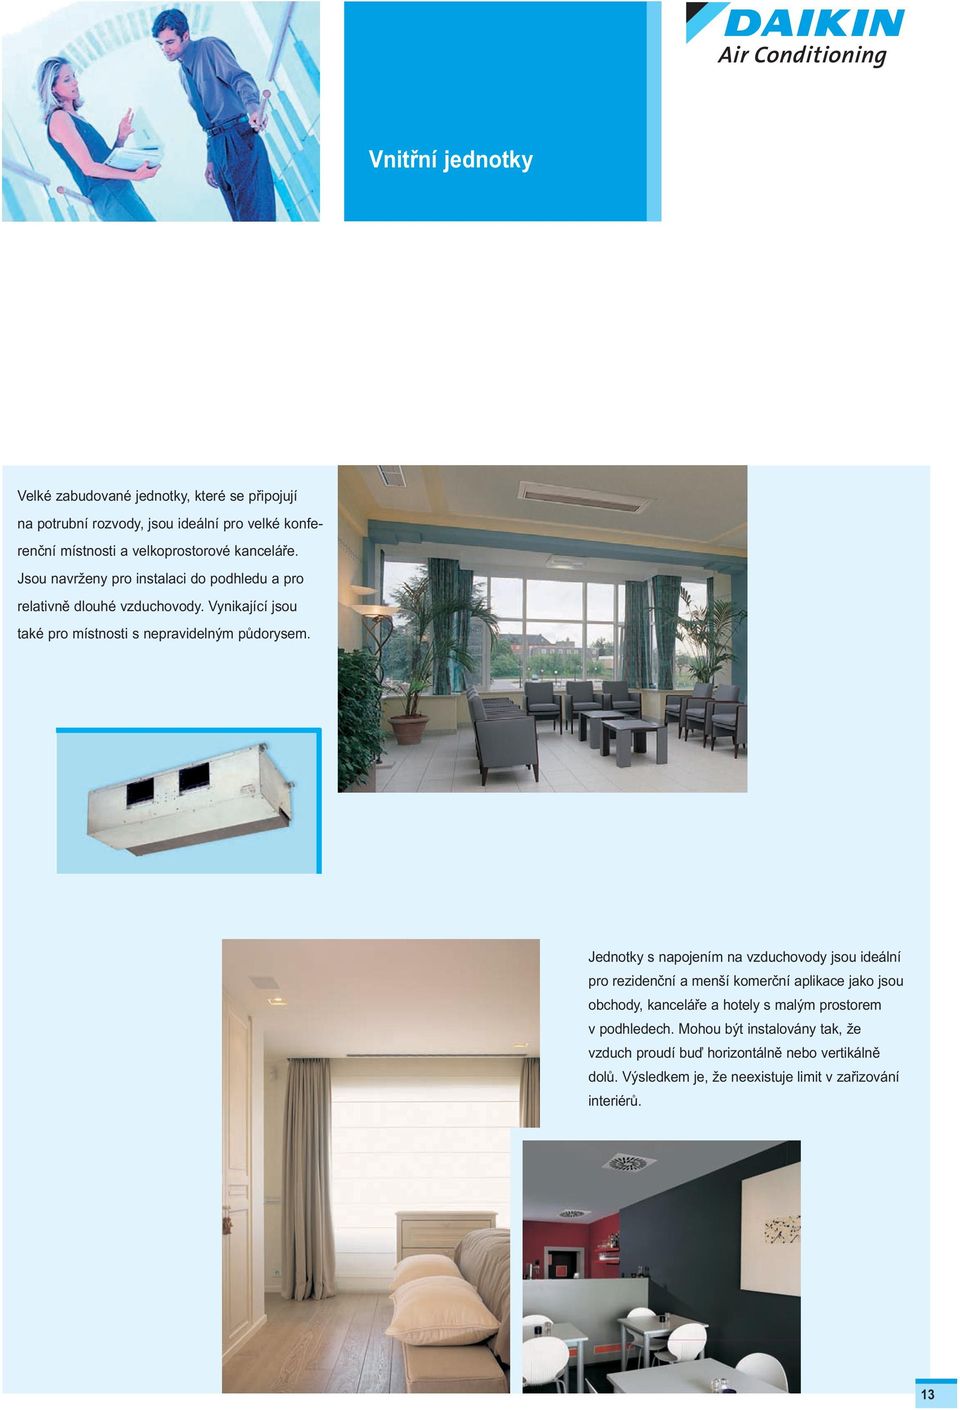 Jednotky s napojením na vzduchovody jsou ideální pro rezidenční a menší komerční aplikace jako jsou obchody, kanceláře a hotely s malým prostorem v